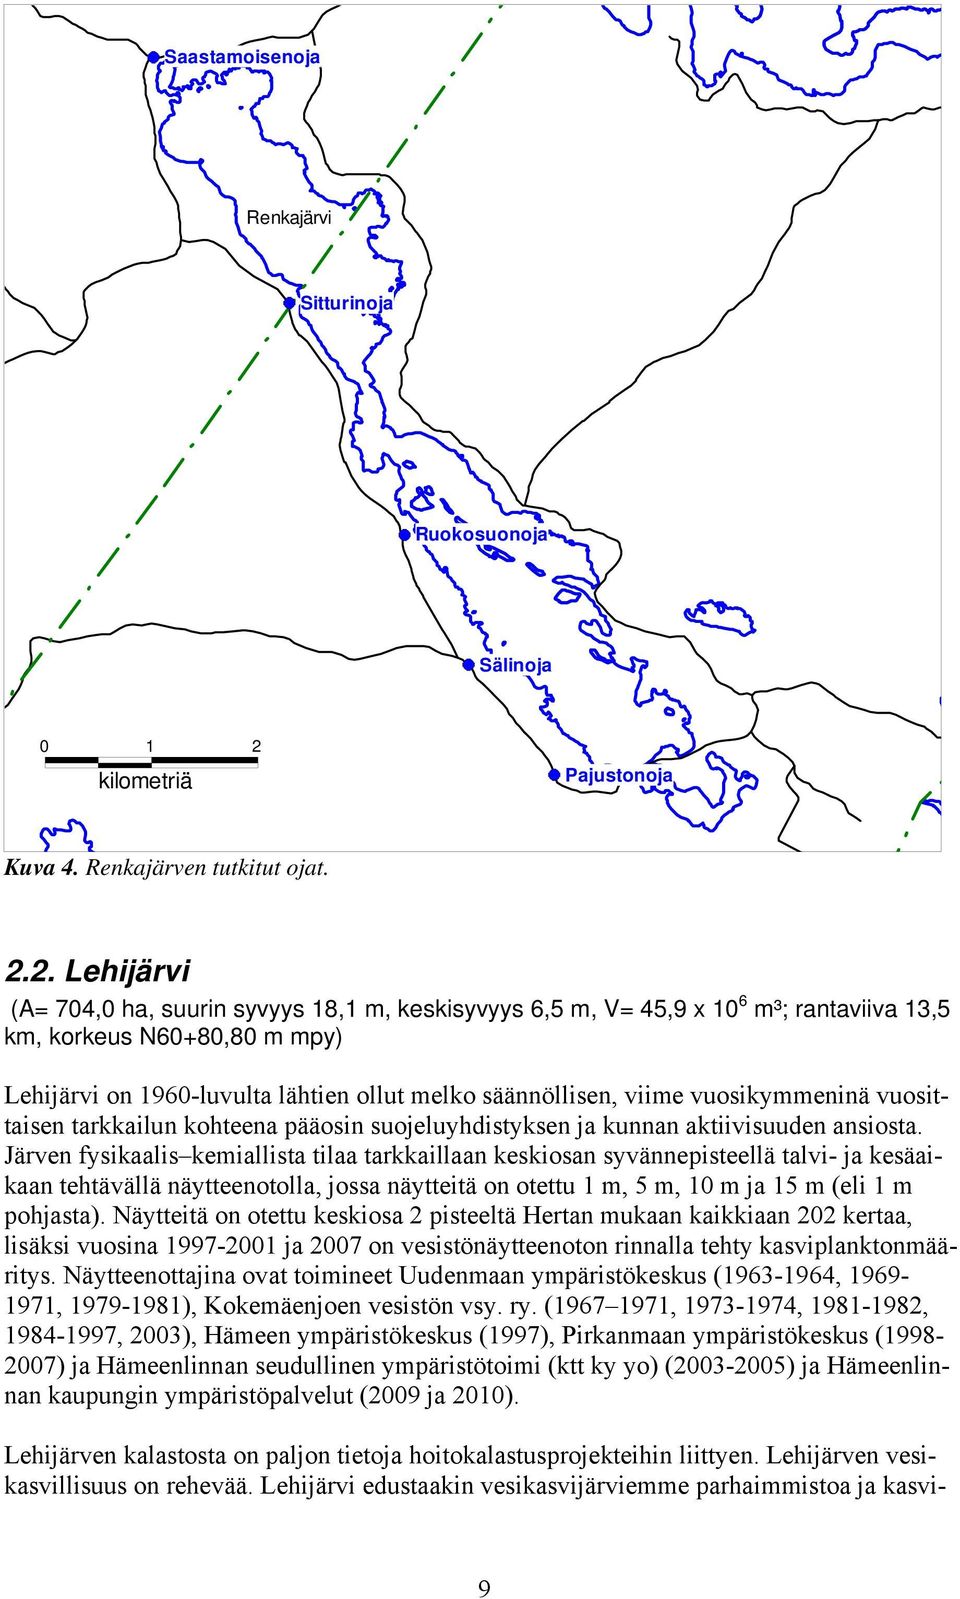 2. Lehijärvi (A= 704,0 ha, suurin syvyys 18,1 m, keskisyvyys 6,5 m, V= 45,9 x 10 6 m³; rantaviiva 13,5 km, korkeus N60+80,80 m mpy) Lehijärvi on 1960-luvulta lähtien ollut melko säännöllisen, viime